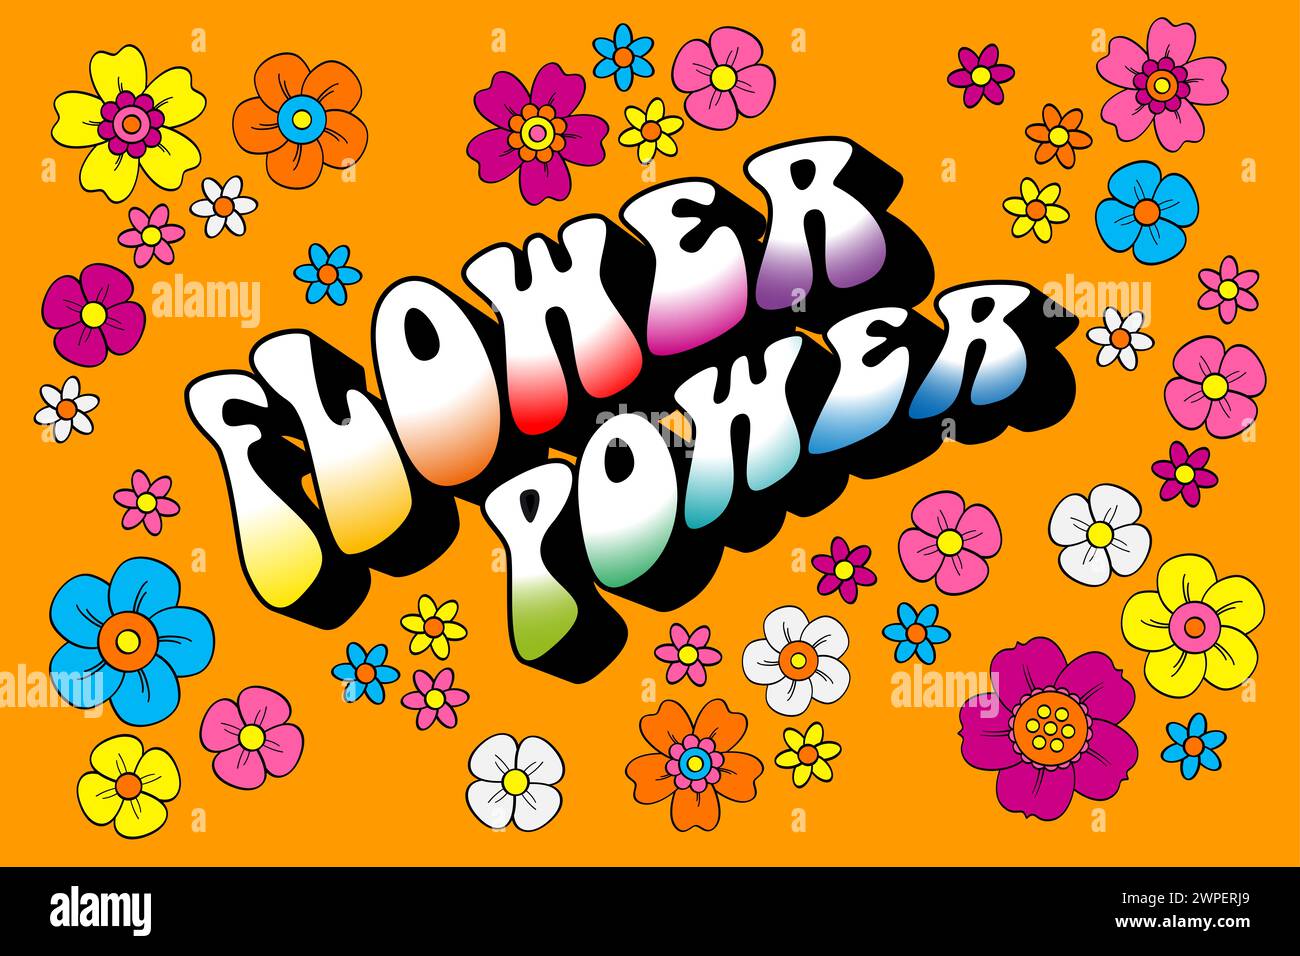 Lettrage de puissance de fleur entouré de nombreuses fleurs hippie colorées, sur fond orange. Slogan et symbole de la résistance passive et de la non-violence. Banque D'Images